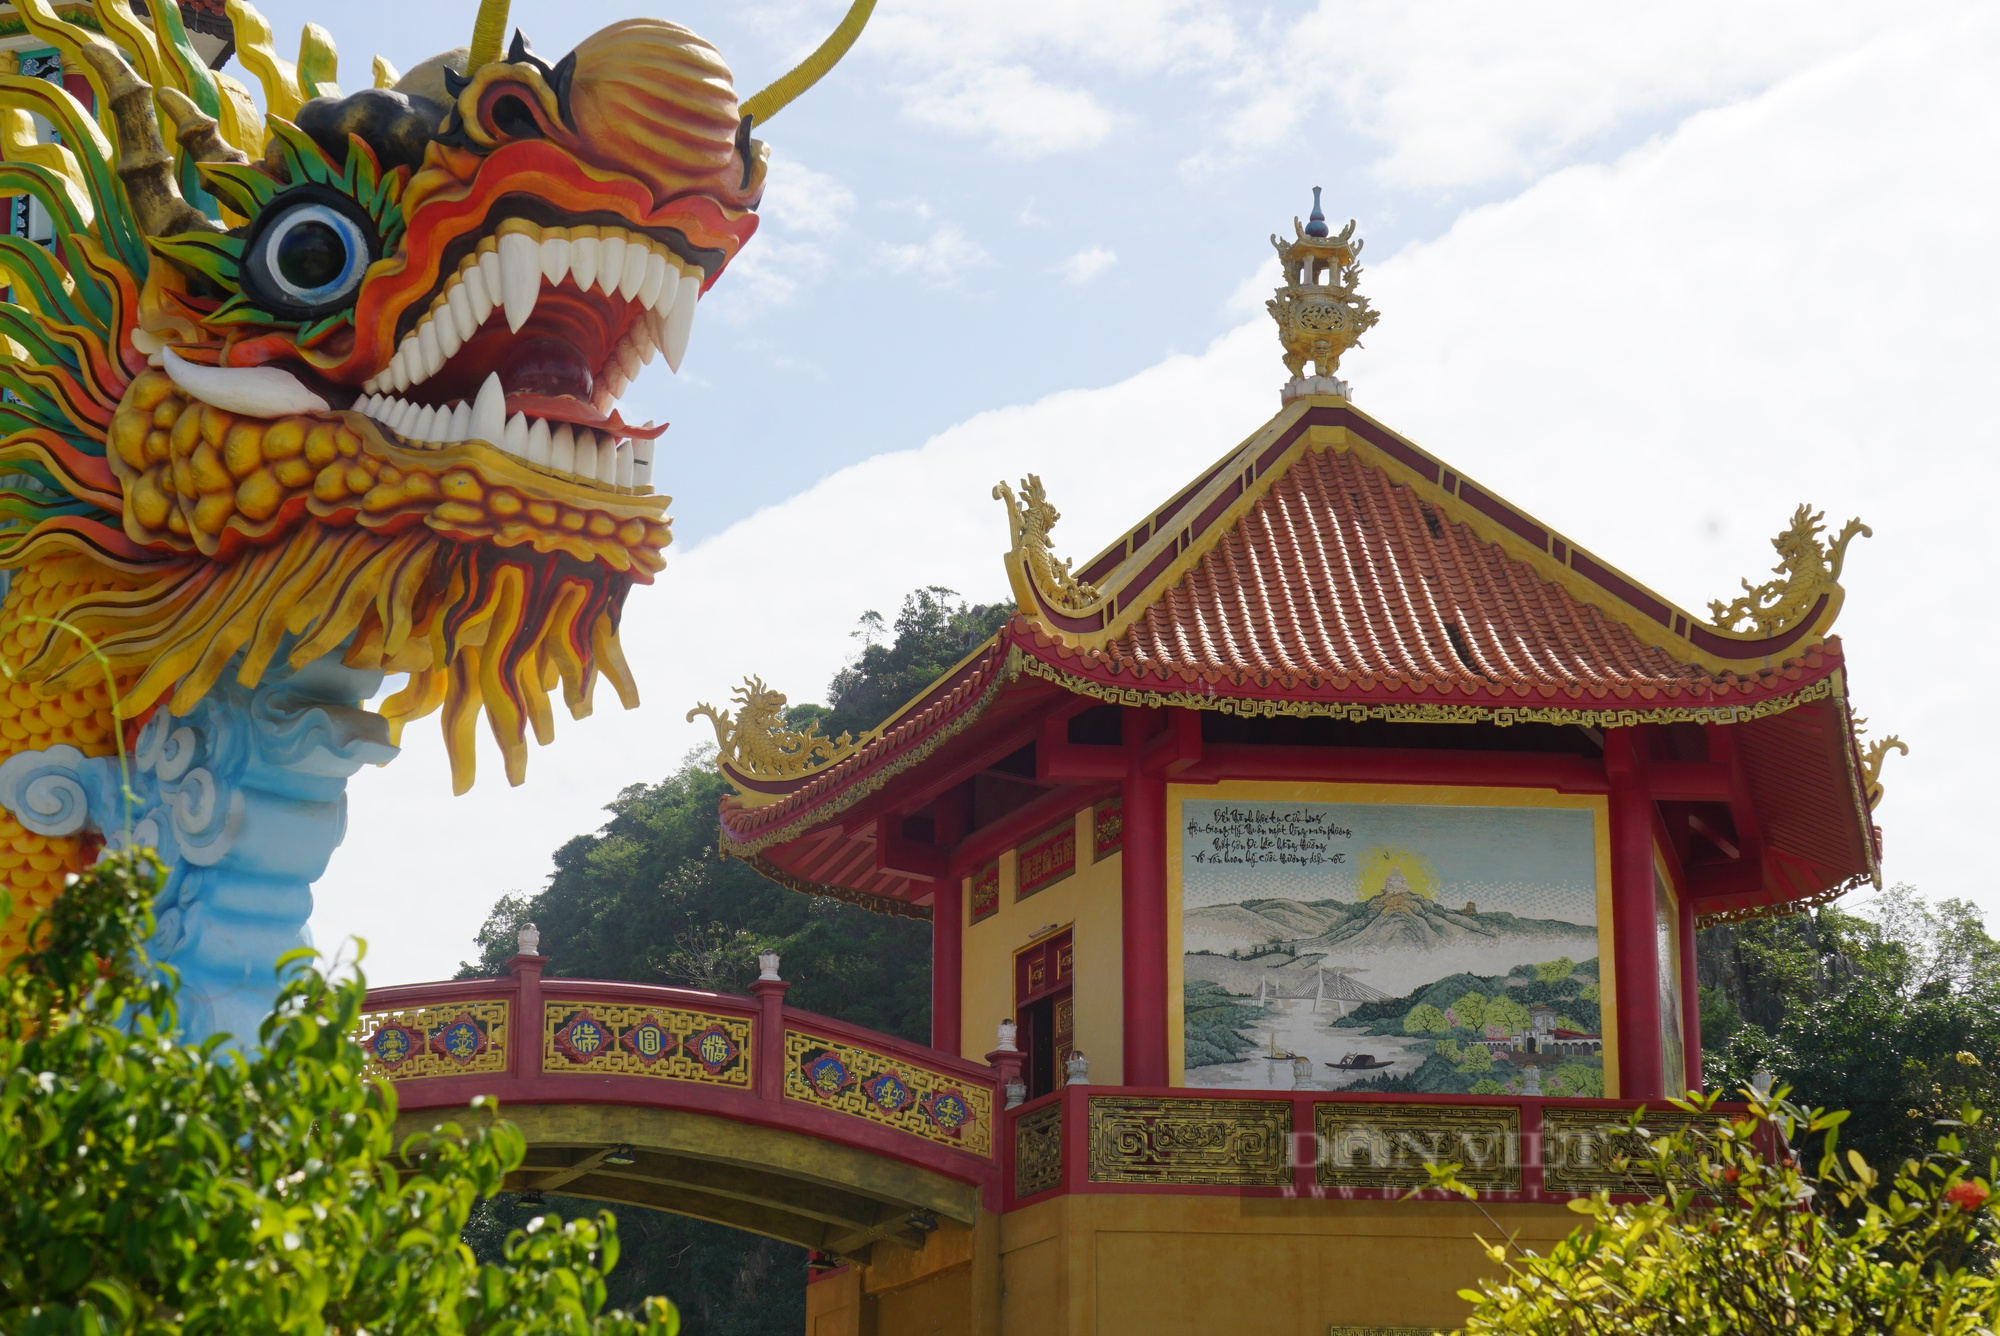 Độc đáo 16 bức tranh sứ độc bản trên tường tại ngôi chùa nổi tiếng Đà Nẵng xác lập kỷ lục Việt Nam - Ảnh 6.